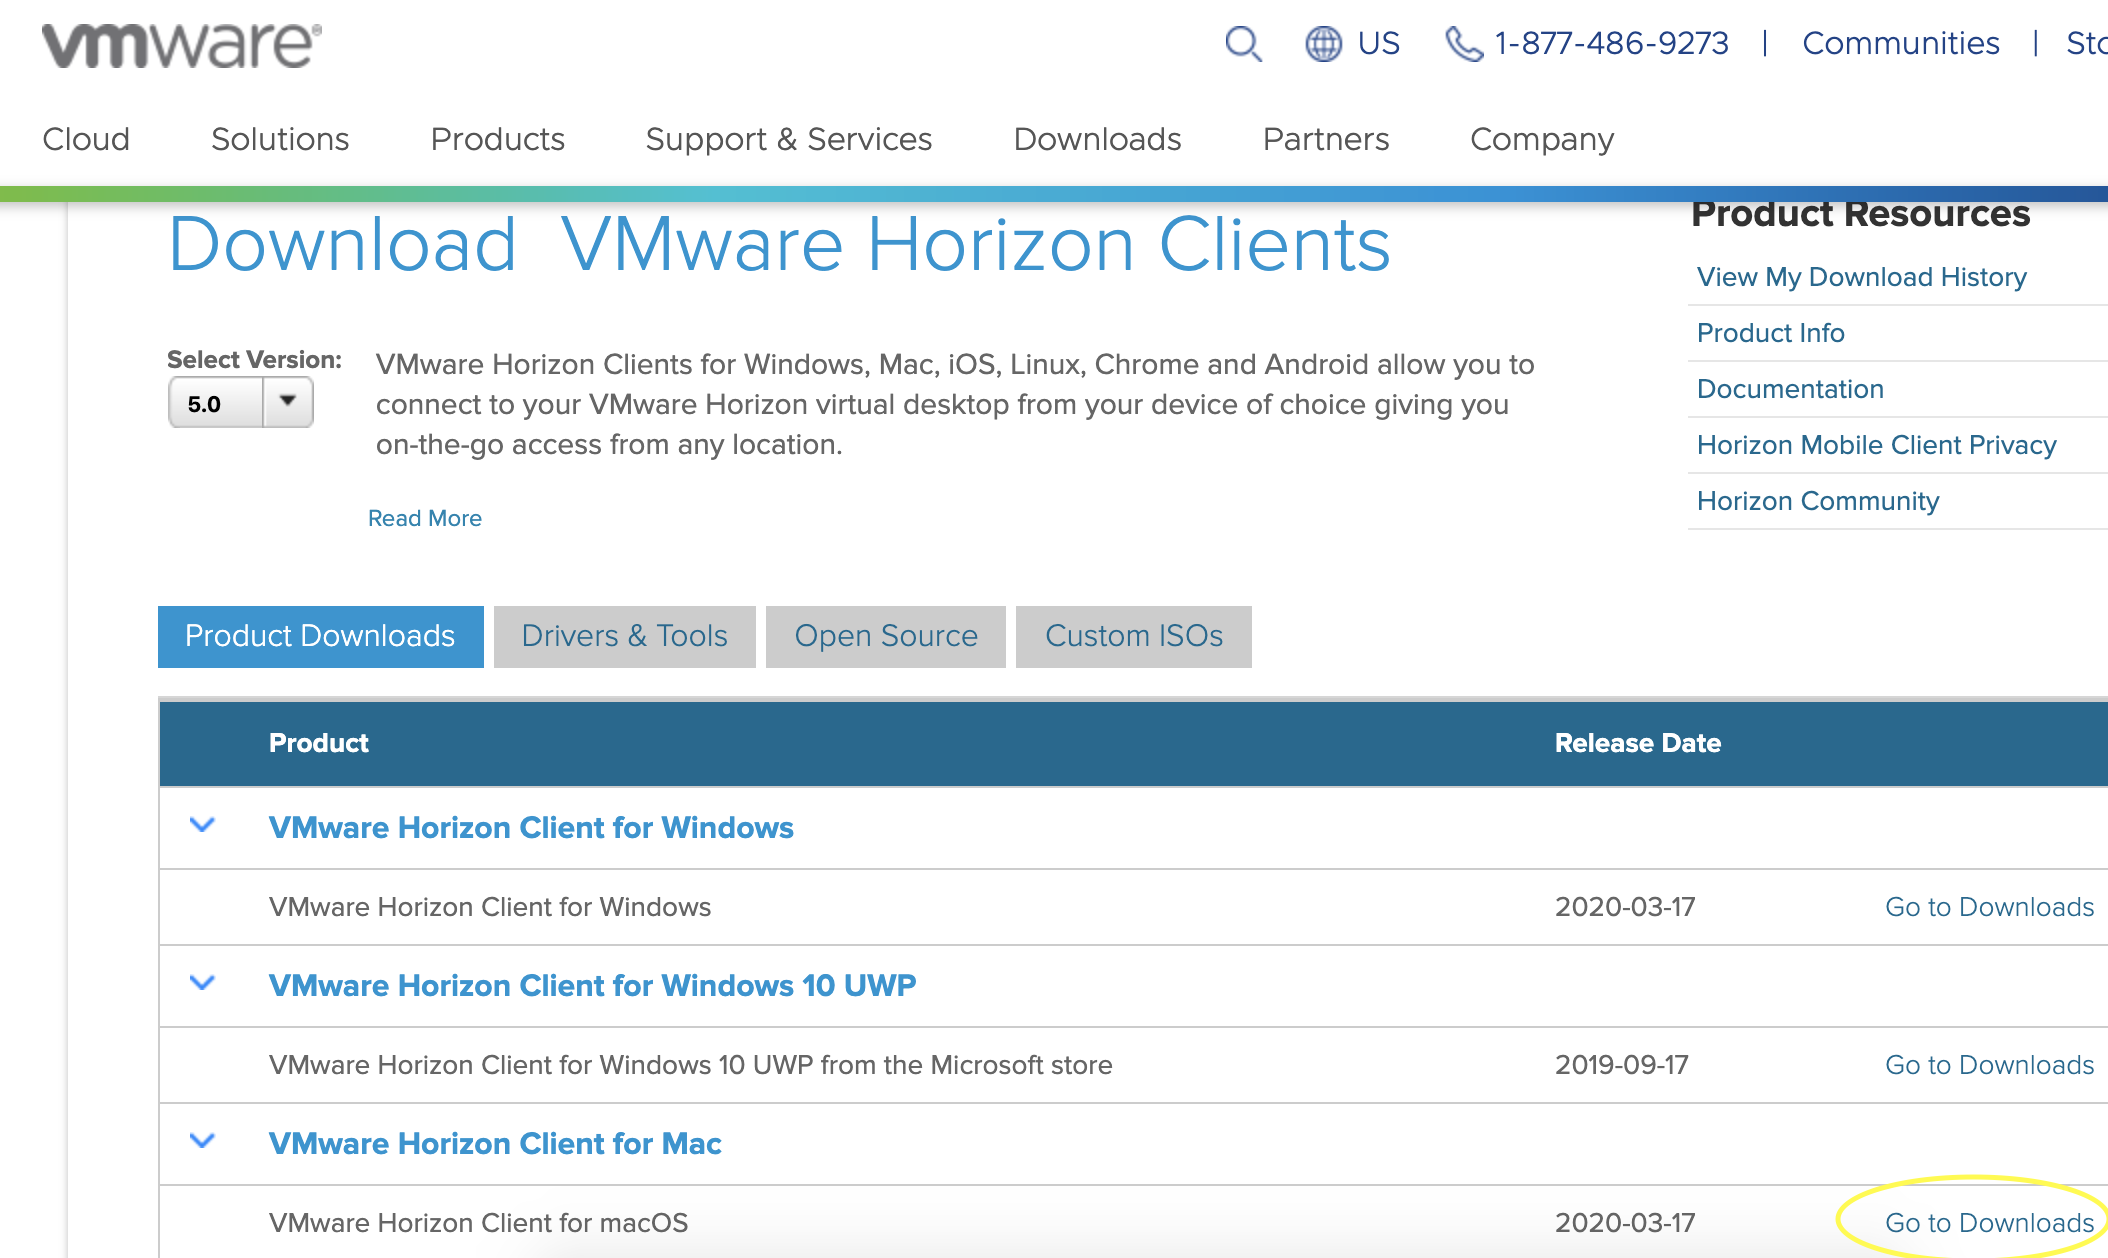 vmware horizon client macos big sur